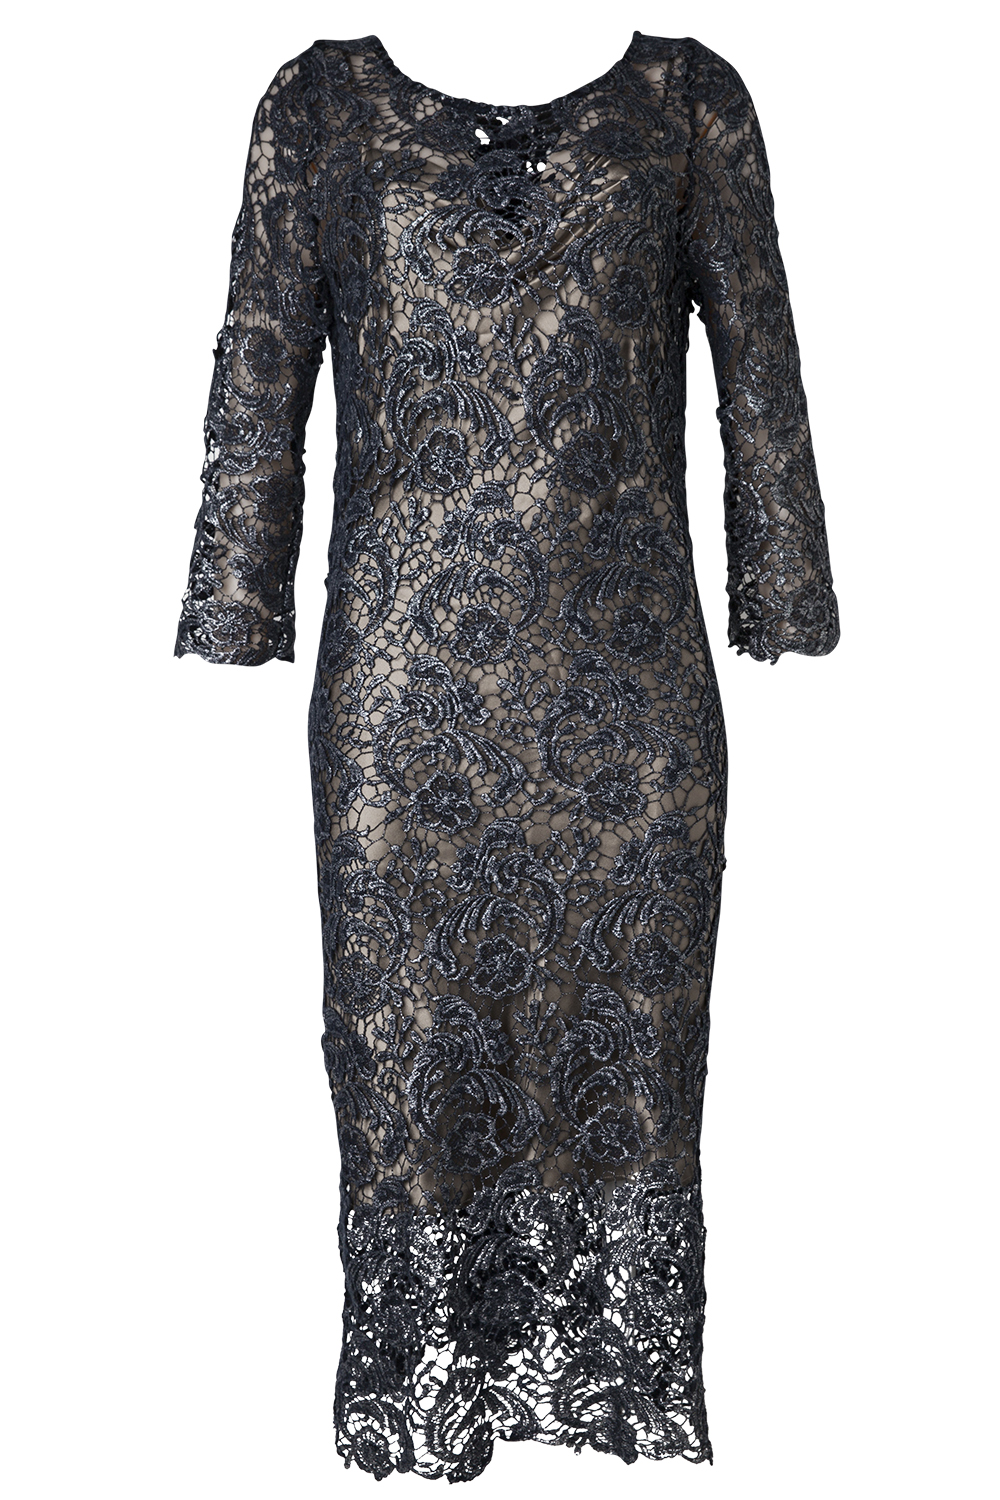 Dress, $1,498, by Liz Mitchell.